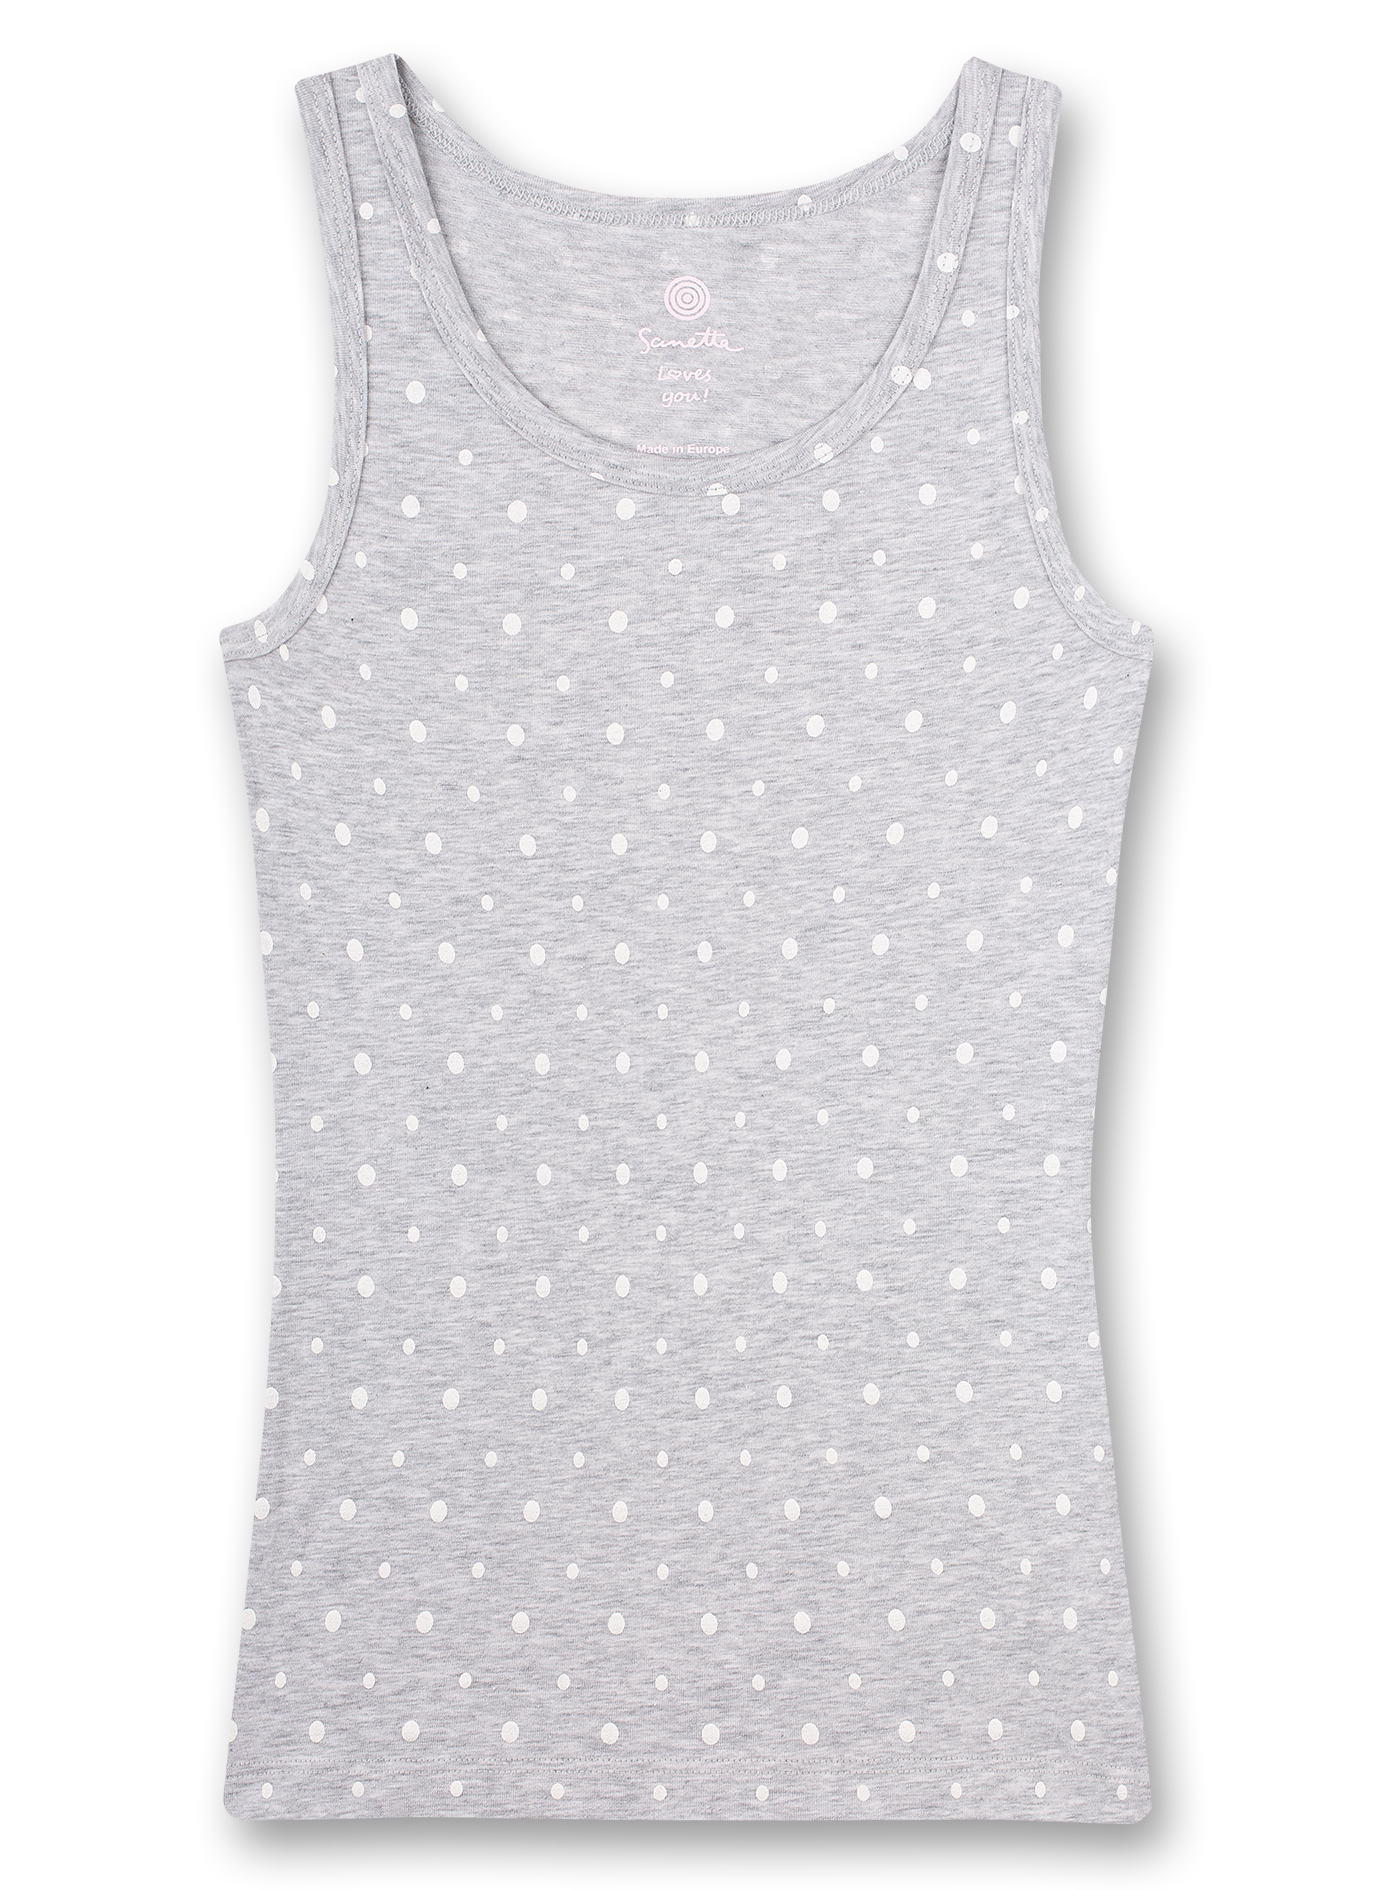 Mädchen-Unterhemd Graumelange Dots